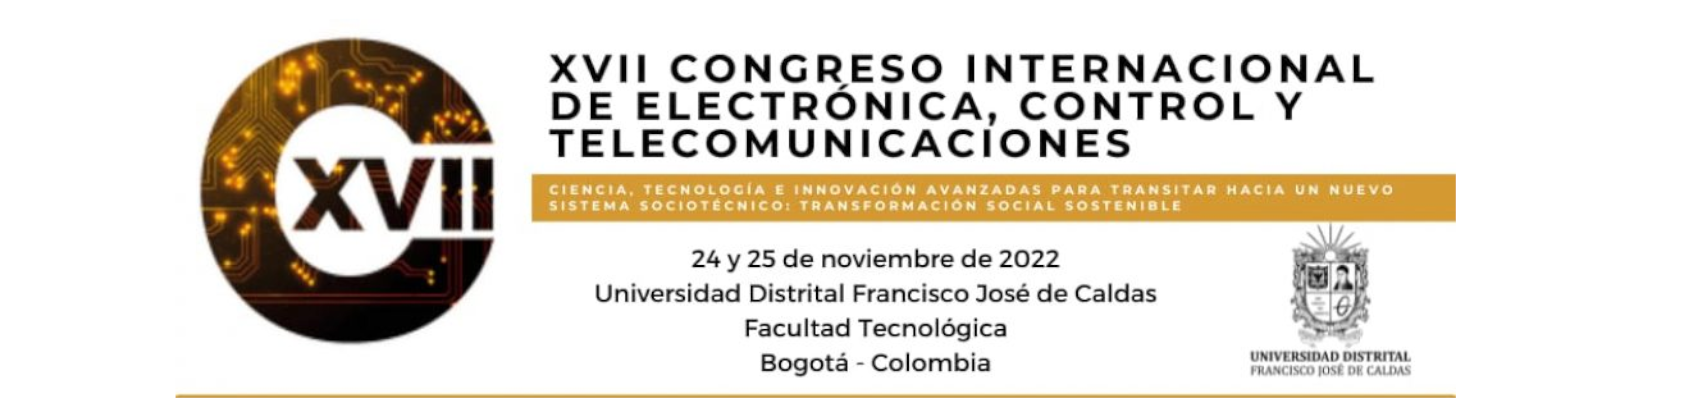 XVII Congreso Internacional de Electrónica, Control y Telecomunicaciones